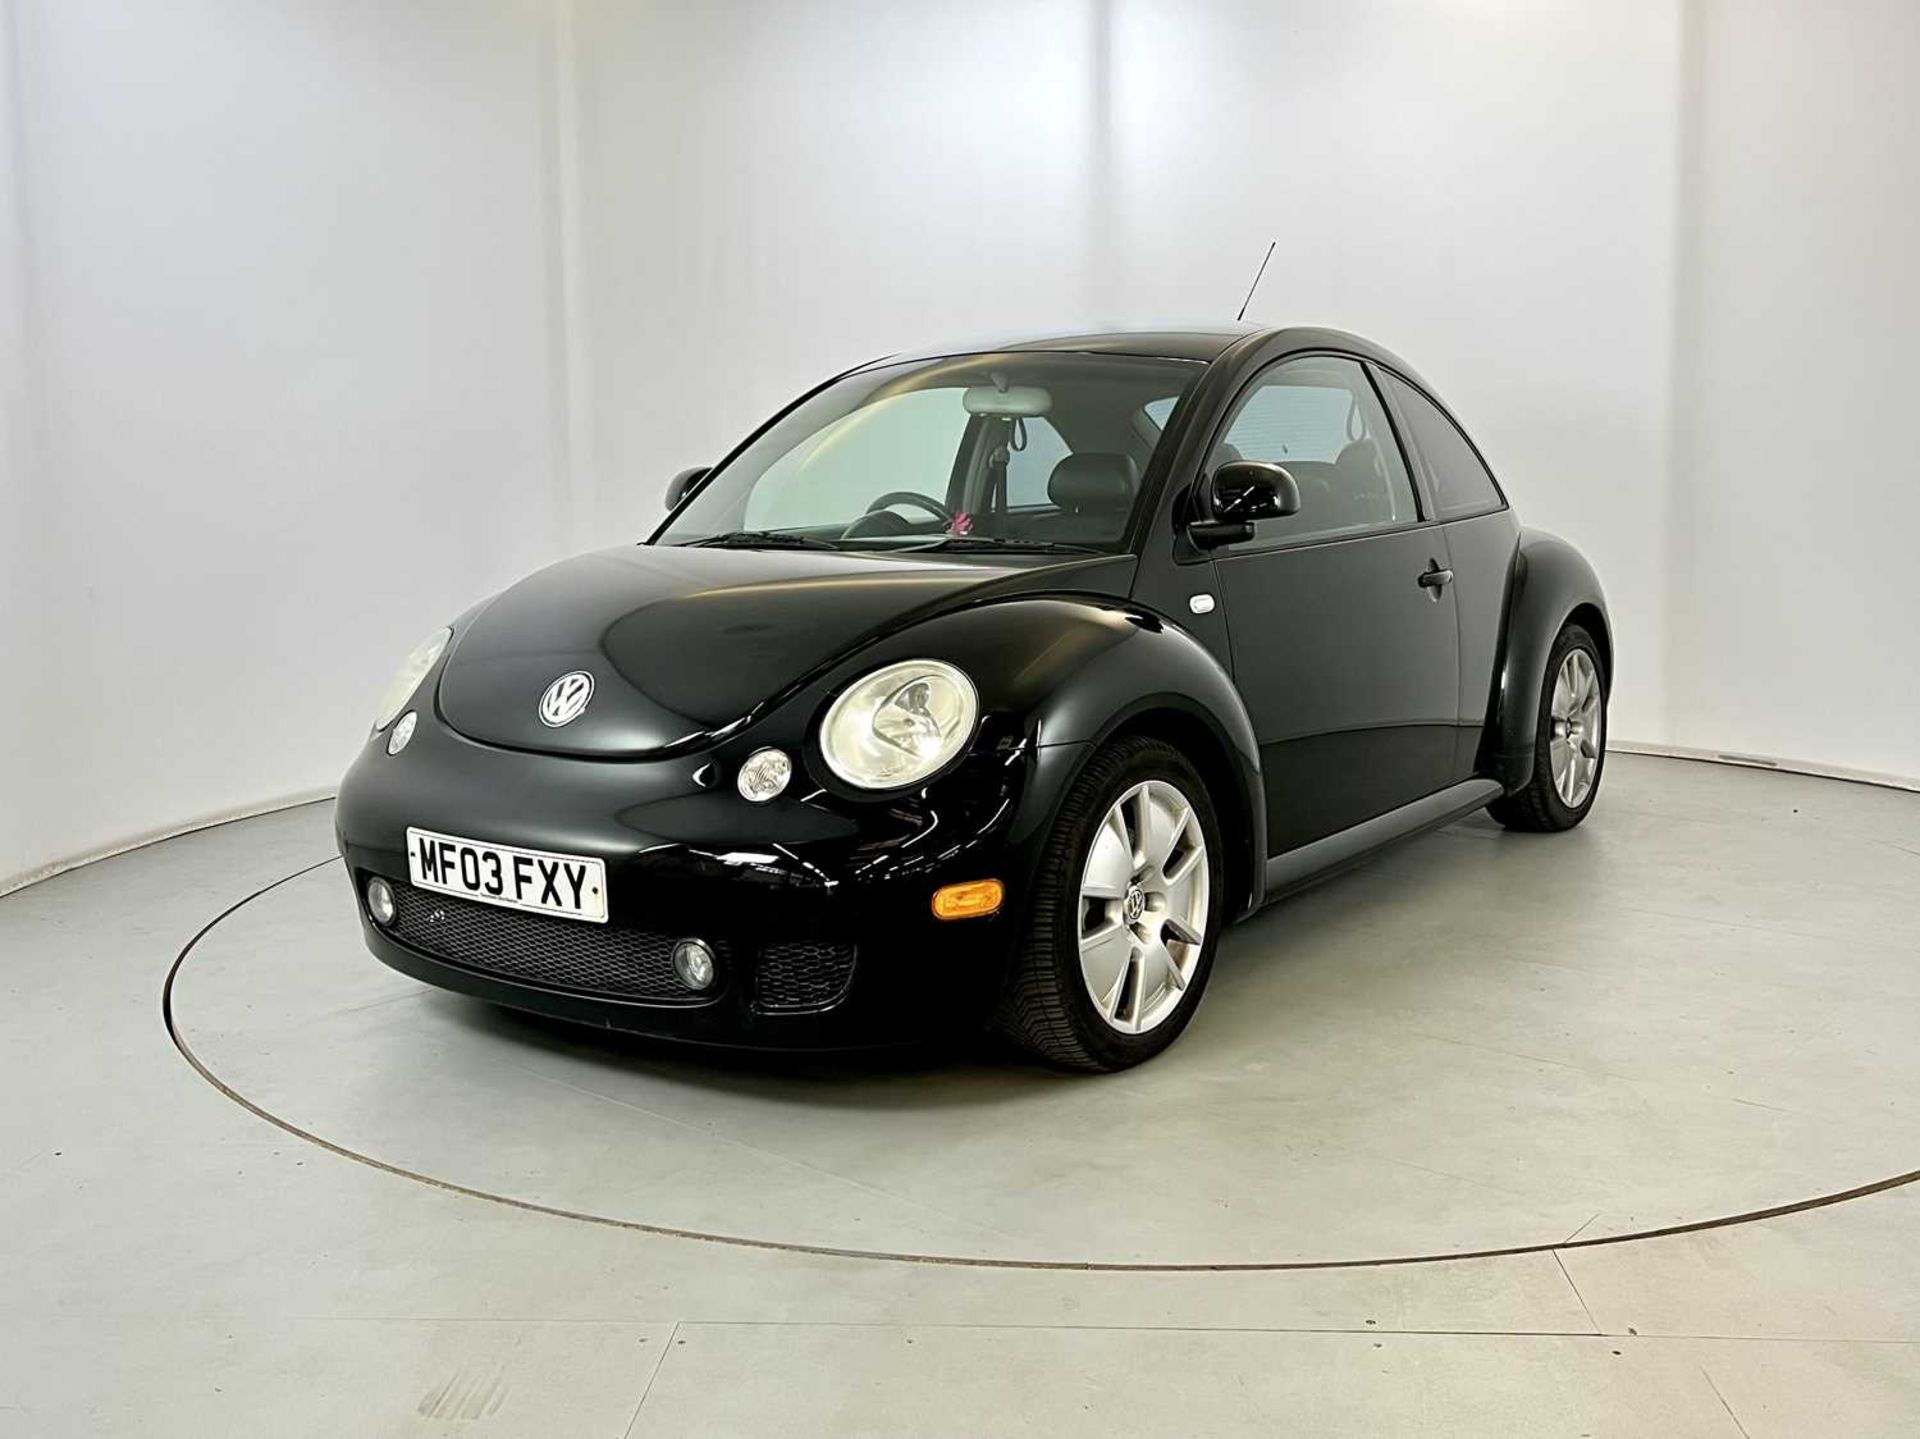 2003 Volkswagen Beetle V5 1 of 500 UK V5 models - Image 3 of 29